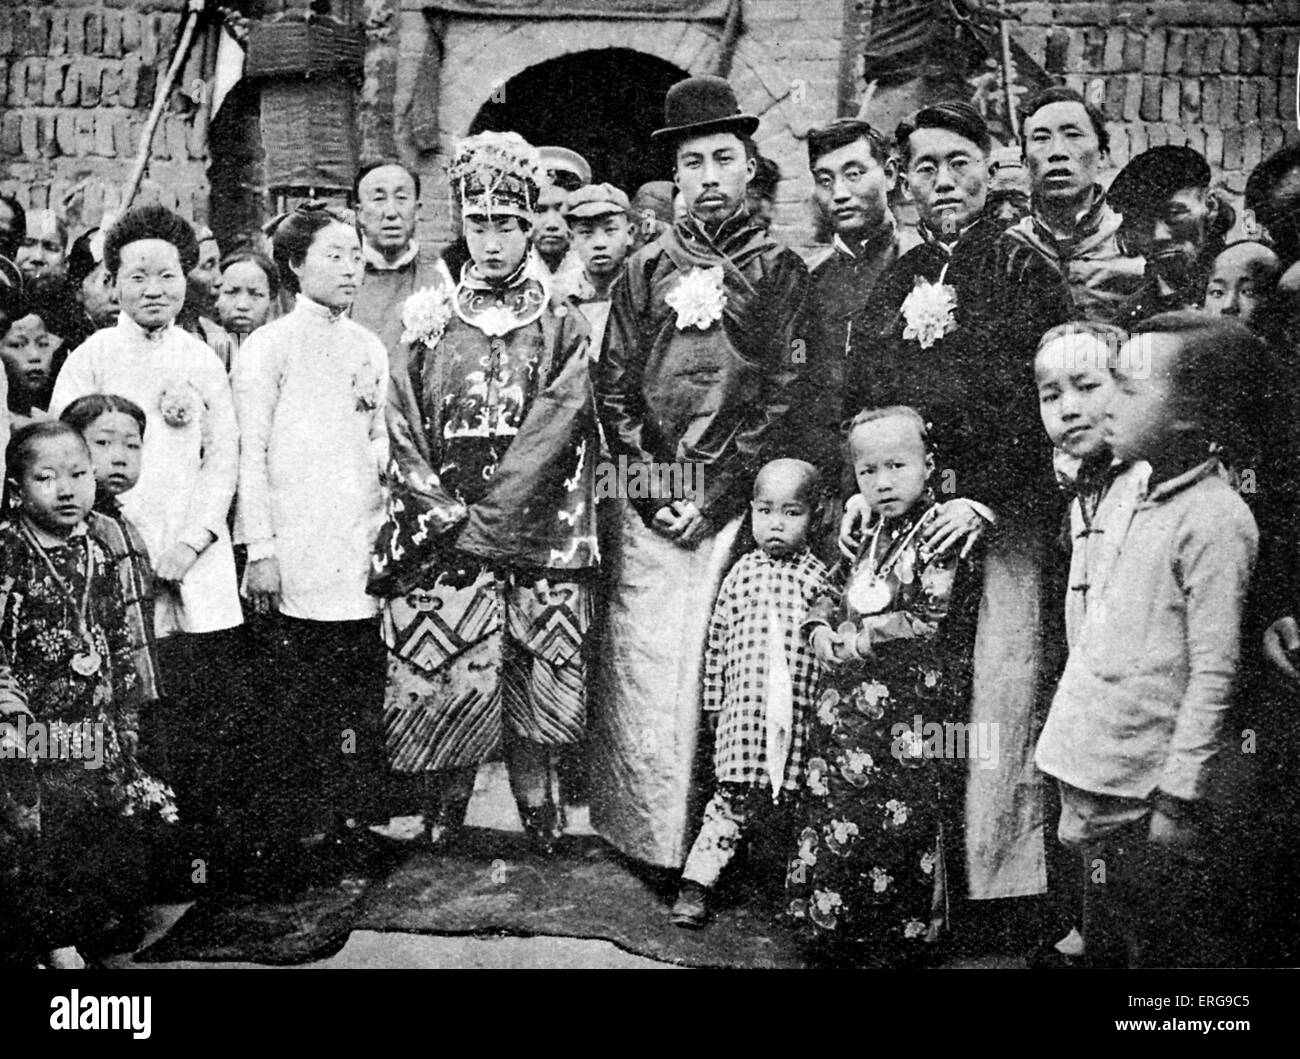 Hochzeitsfeier am Fen Chou Fou, China. Anfang des 20. Jahrhunderts. Traditionelle Kleidung. Stockfoto